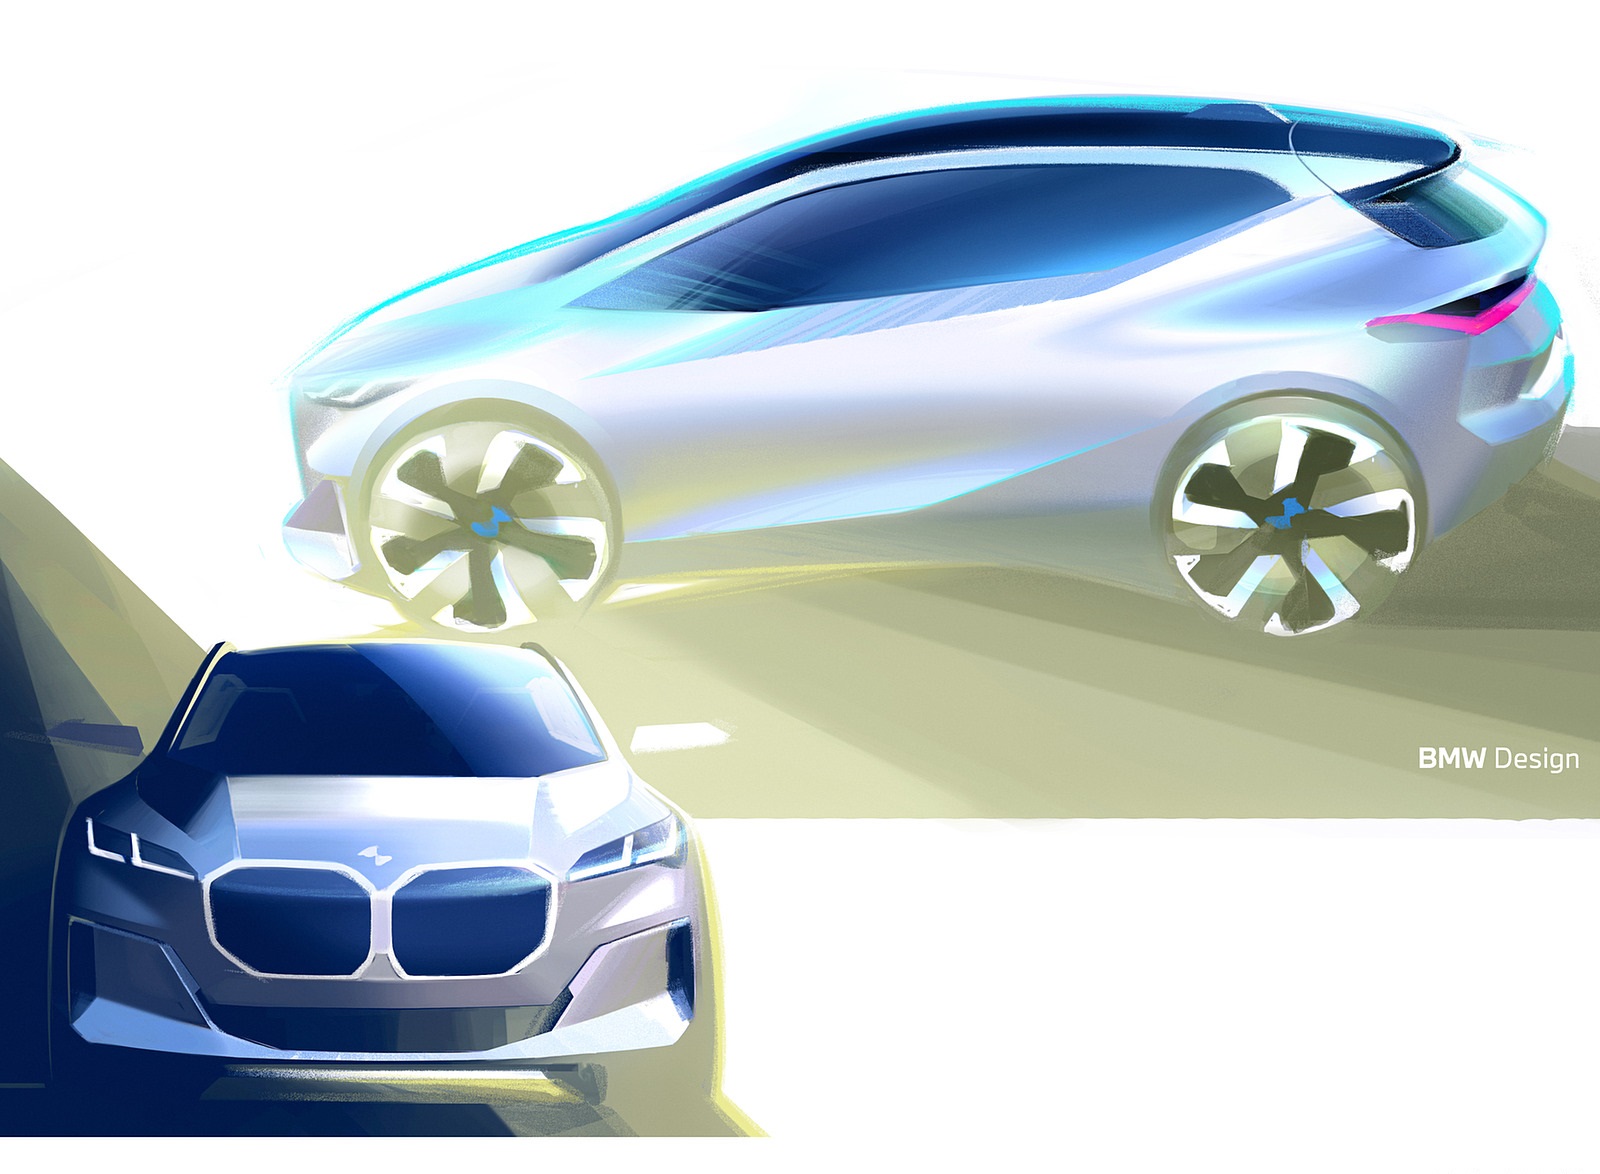 2022 BMW 223i Active Tourer Design Sketch Wallpapers #80 of 231